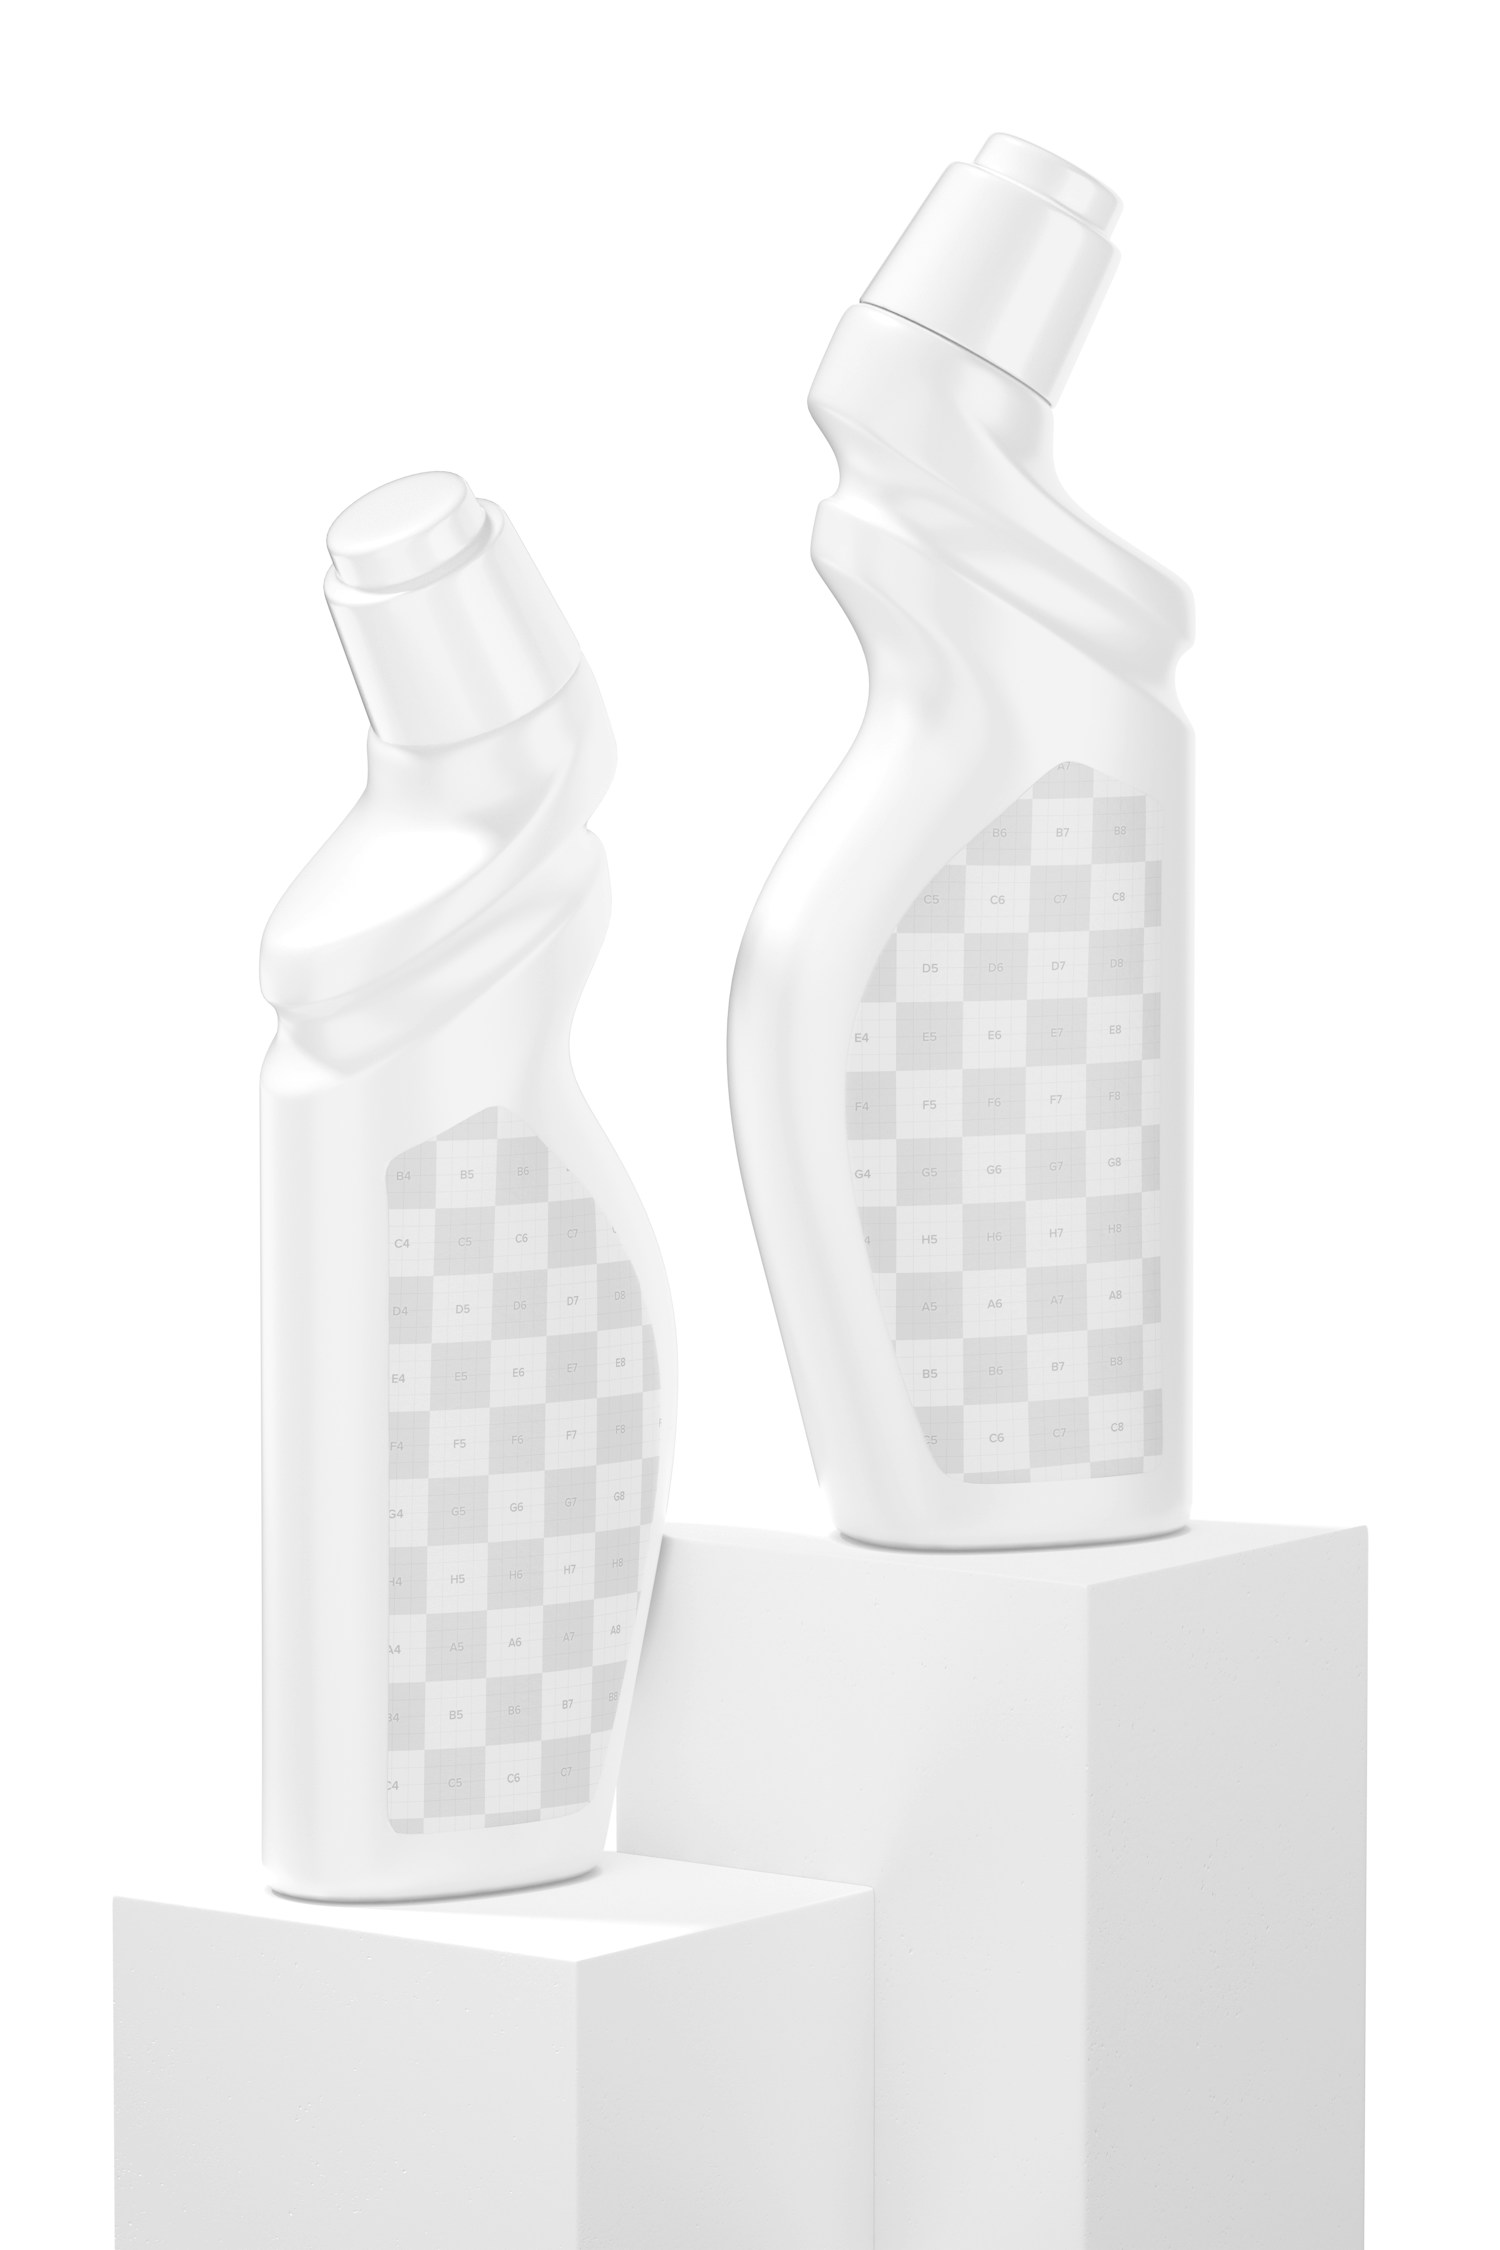 Maqueta de Botellas Plásticas de Detergente, Perspectiva